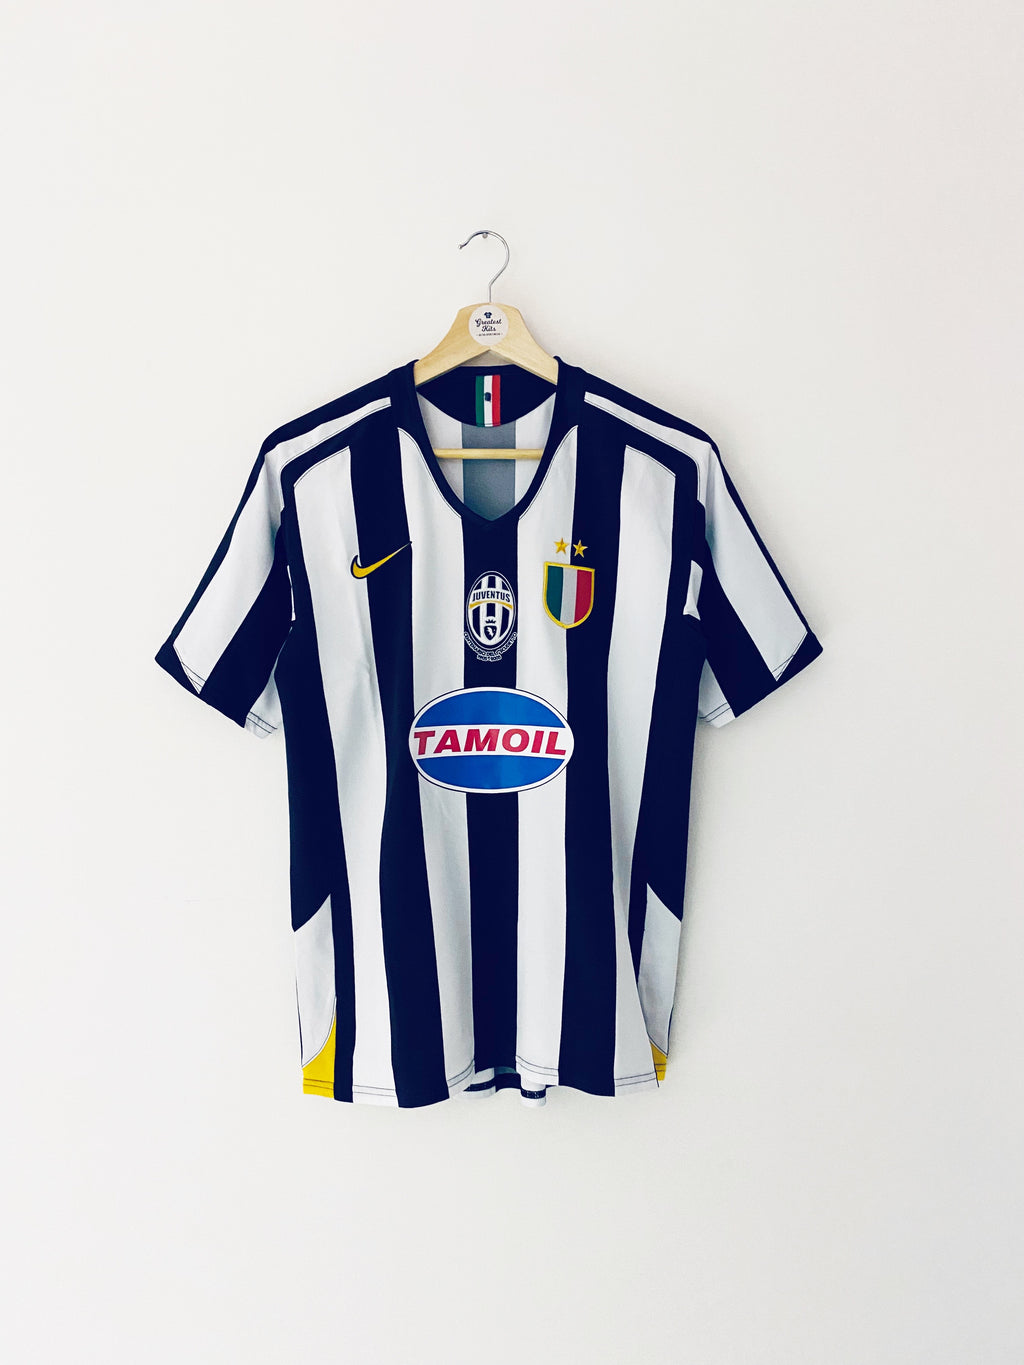 2005/06 Juventus Centenary Home Shirt (S) 9/10